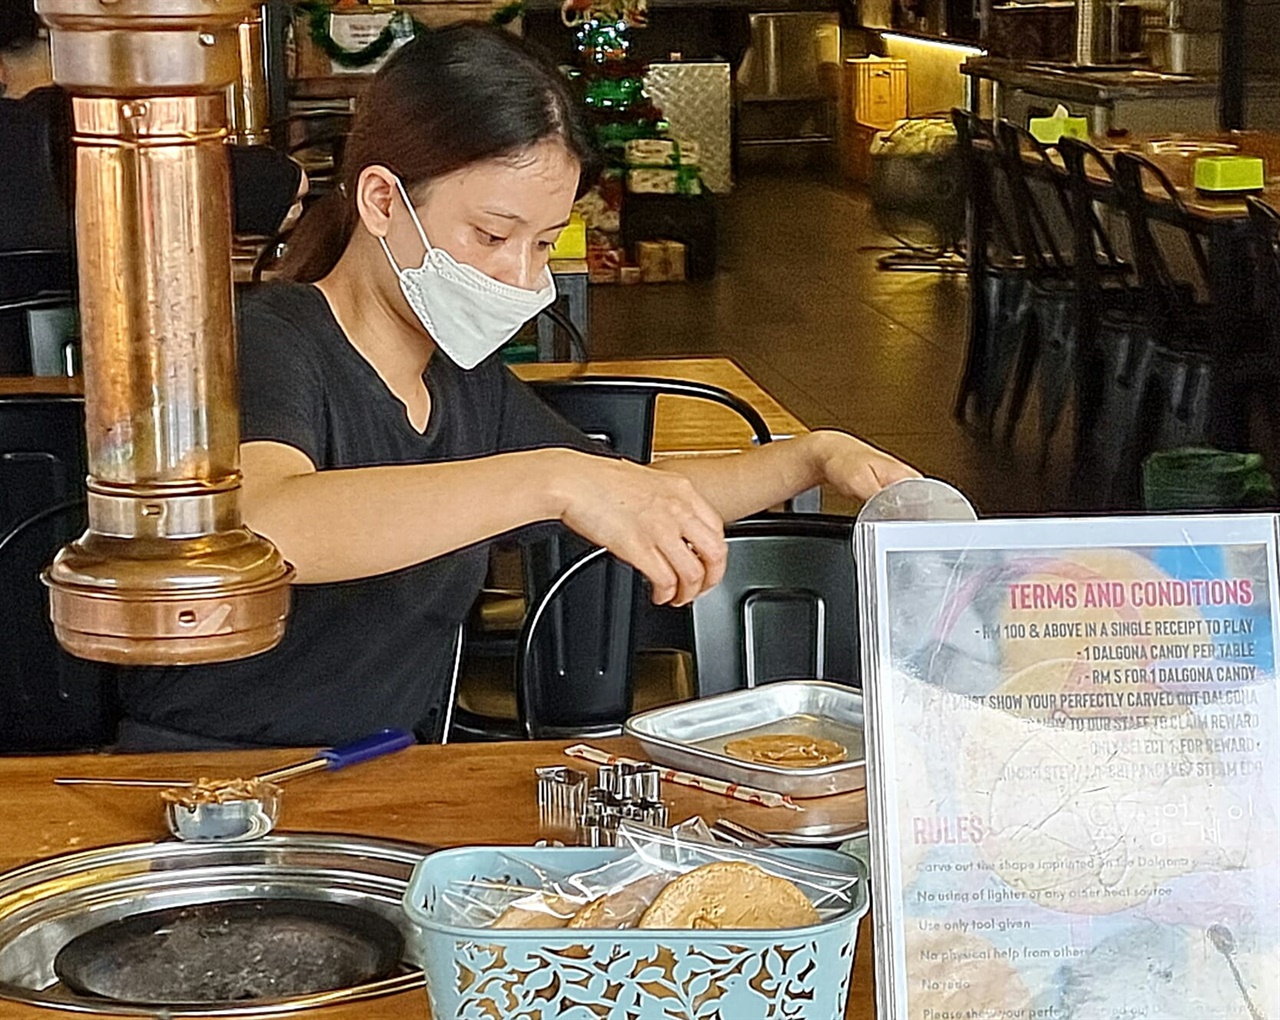 말레이시아에서도 달고나 세트를 팔고 있는데, 현지 식당의 종업원이 여유시간을 이용하여 판매할 달고나를 만들고 있다.